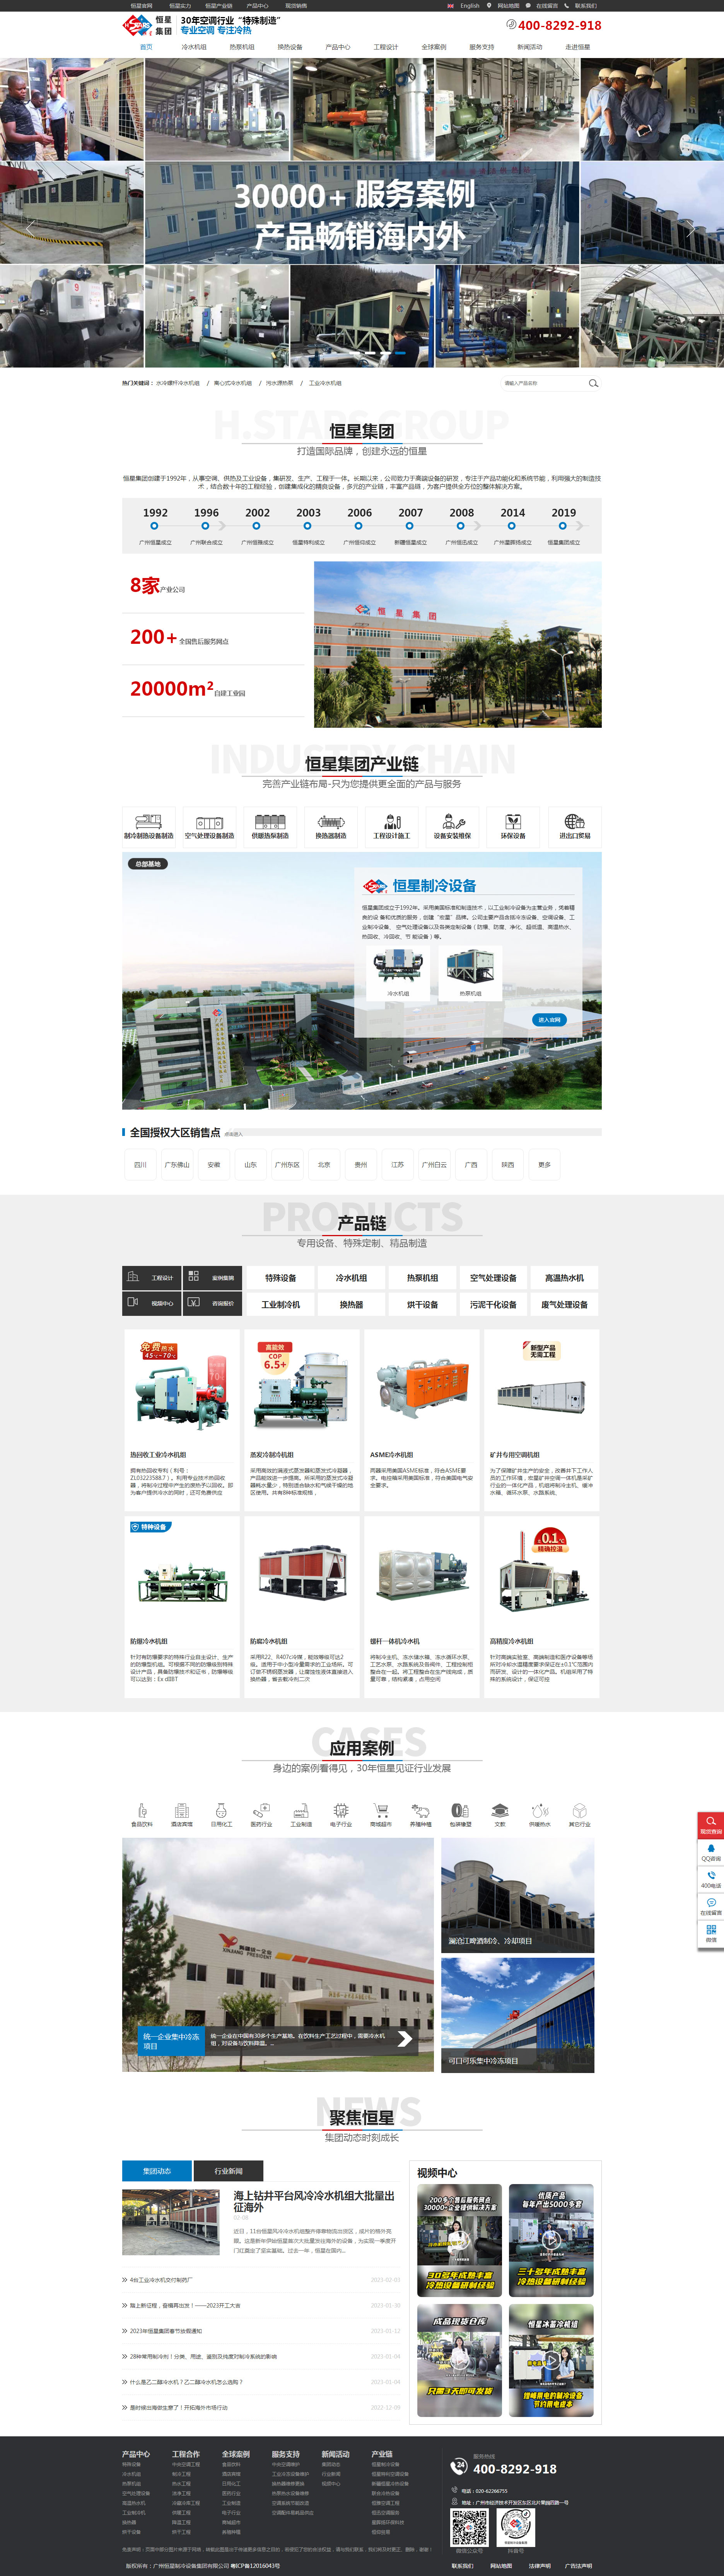 广州恒星制冷设备集团网站设计效果图